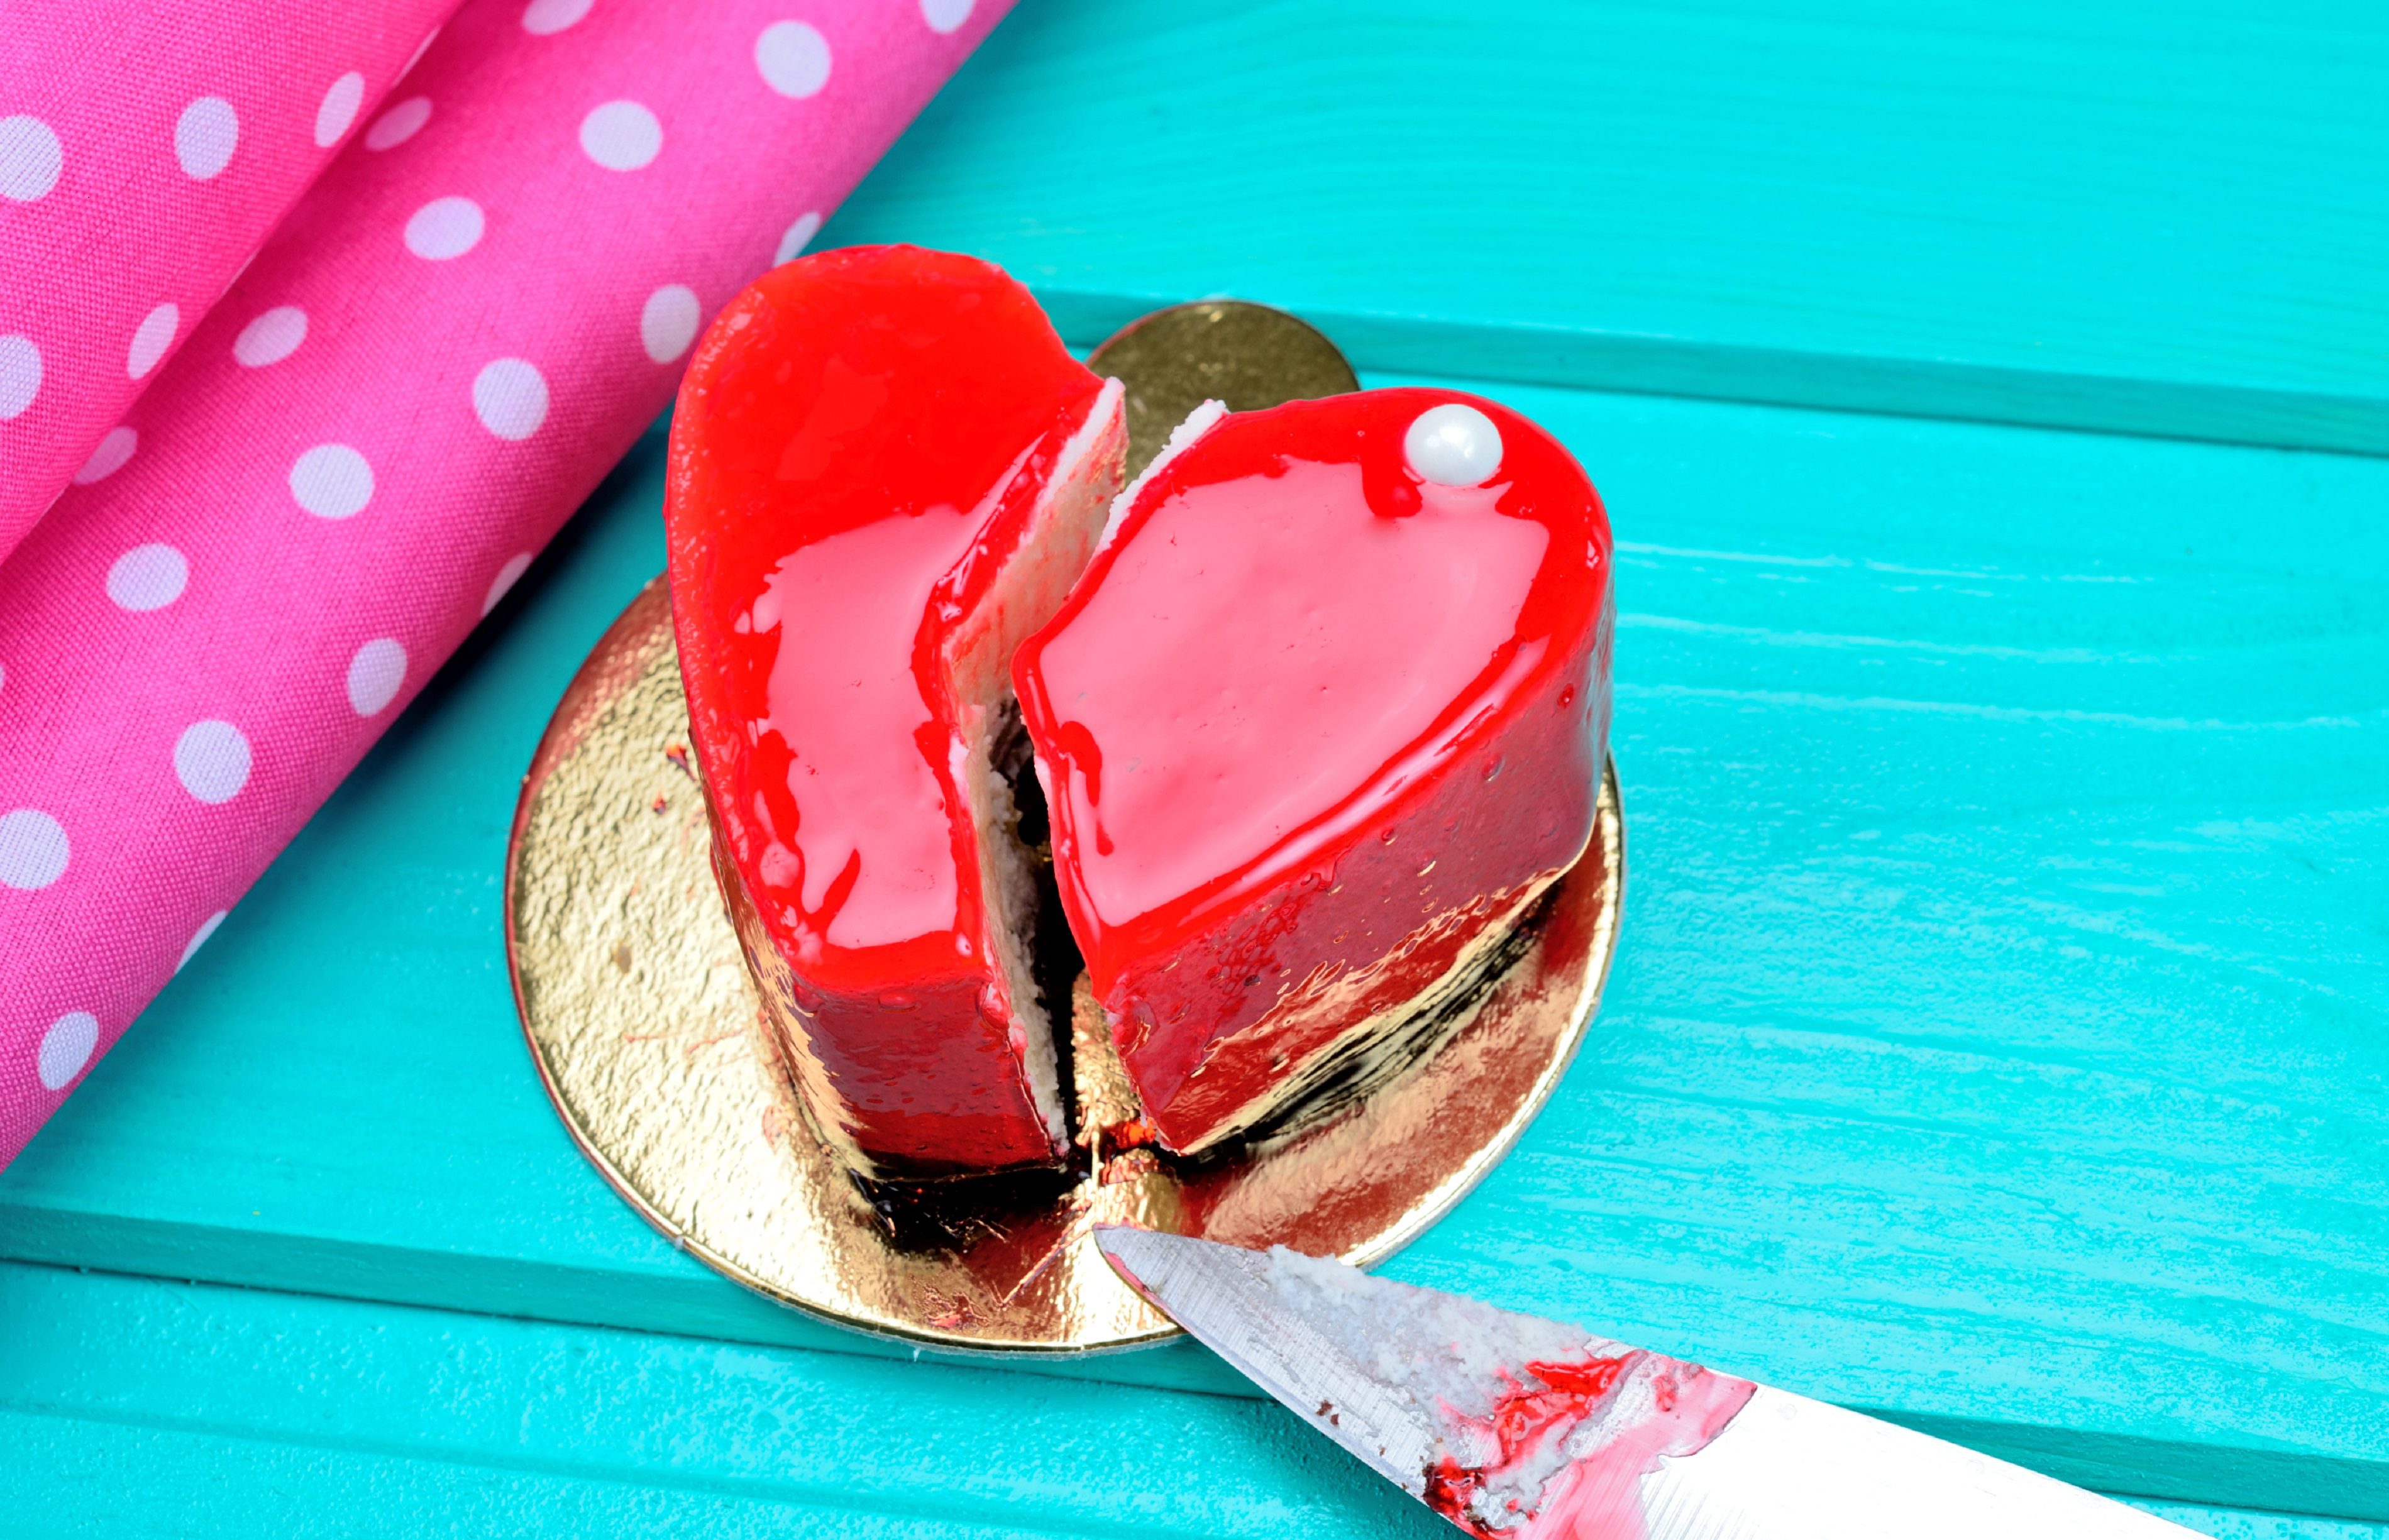 Cómo hacer un pastel en forma de corazón para San Valentín